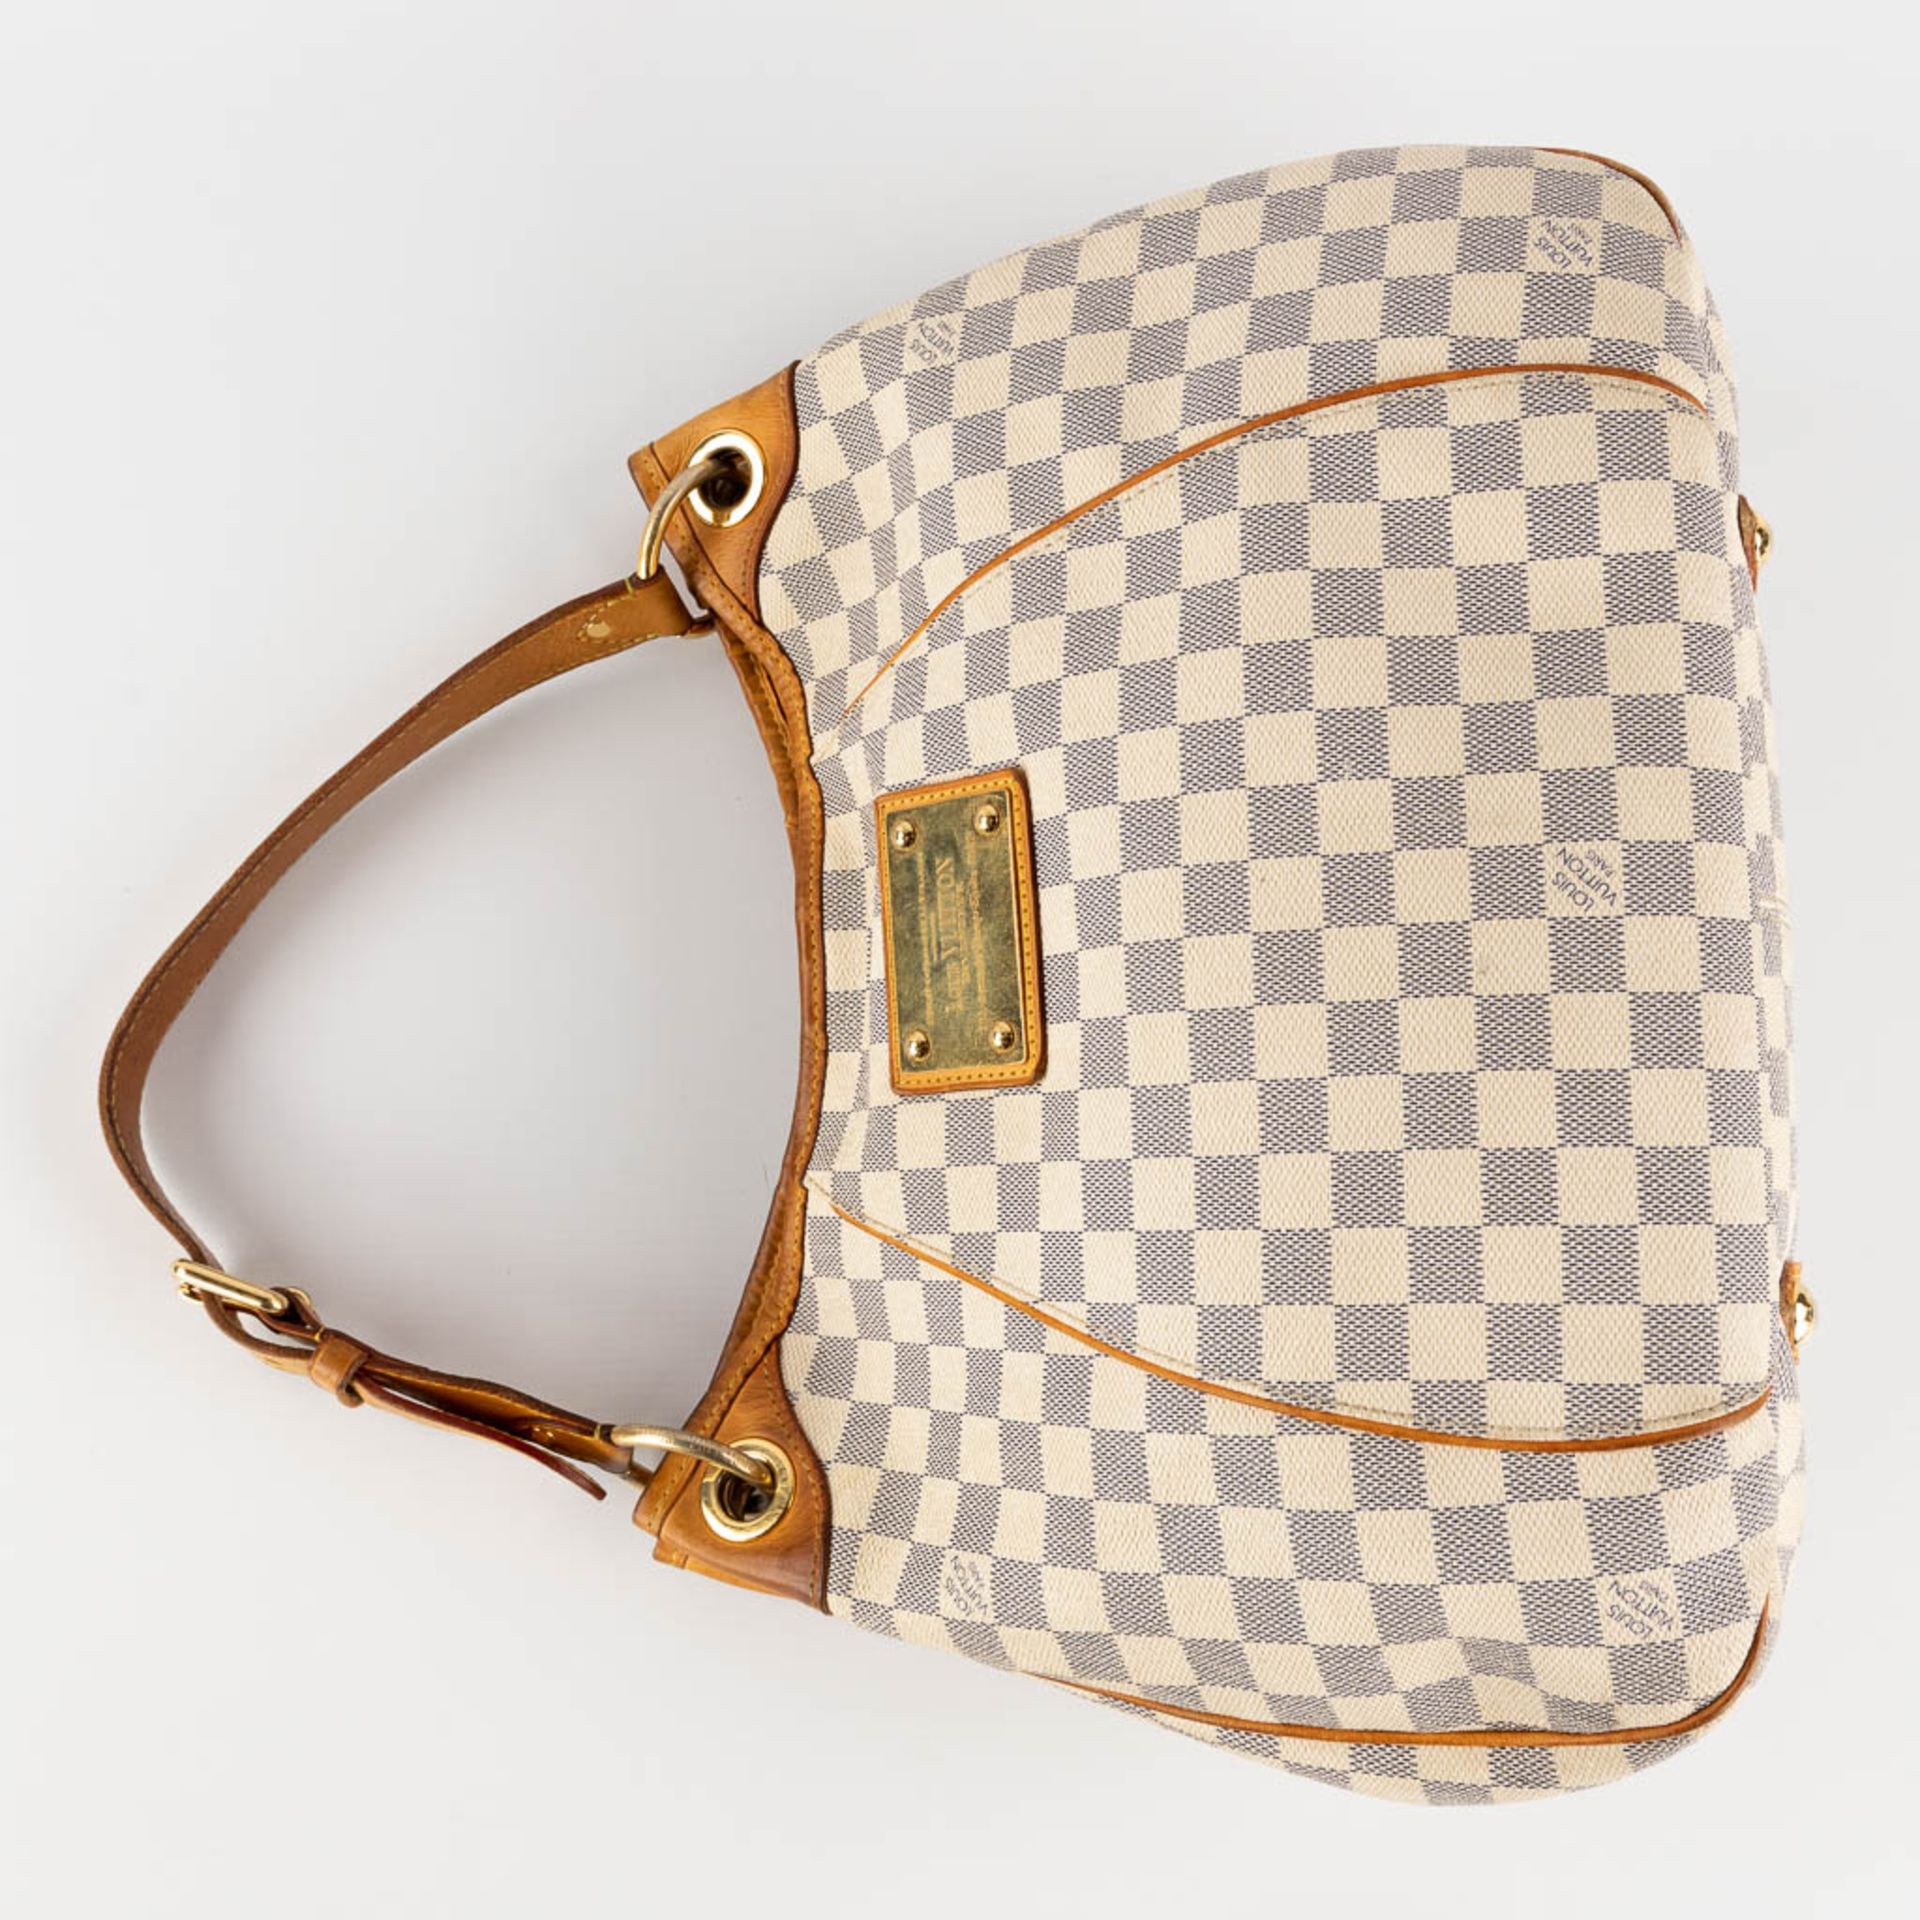 Louis Vuitton, Galleria, a handbag made of Damier Azur. (W:39 x H:30 cm) - Image 10 of 18